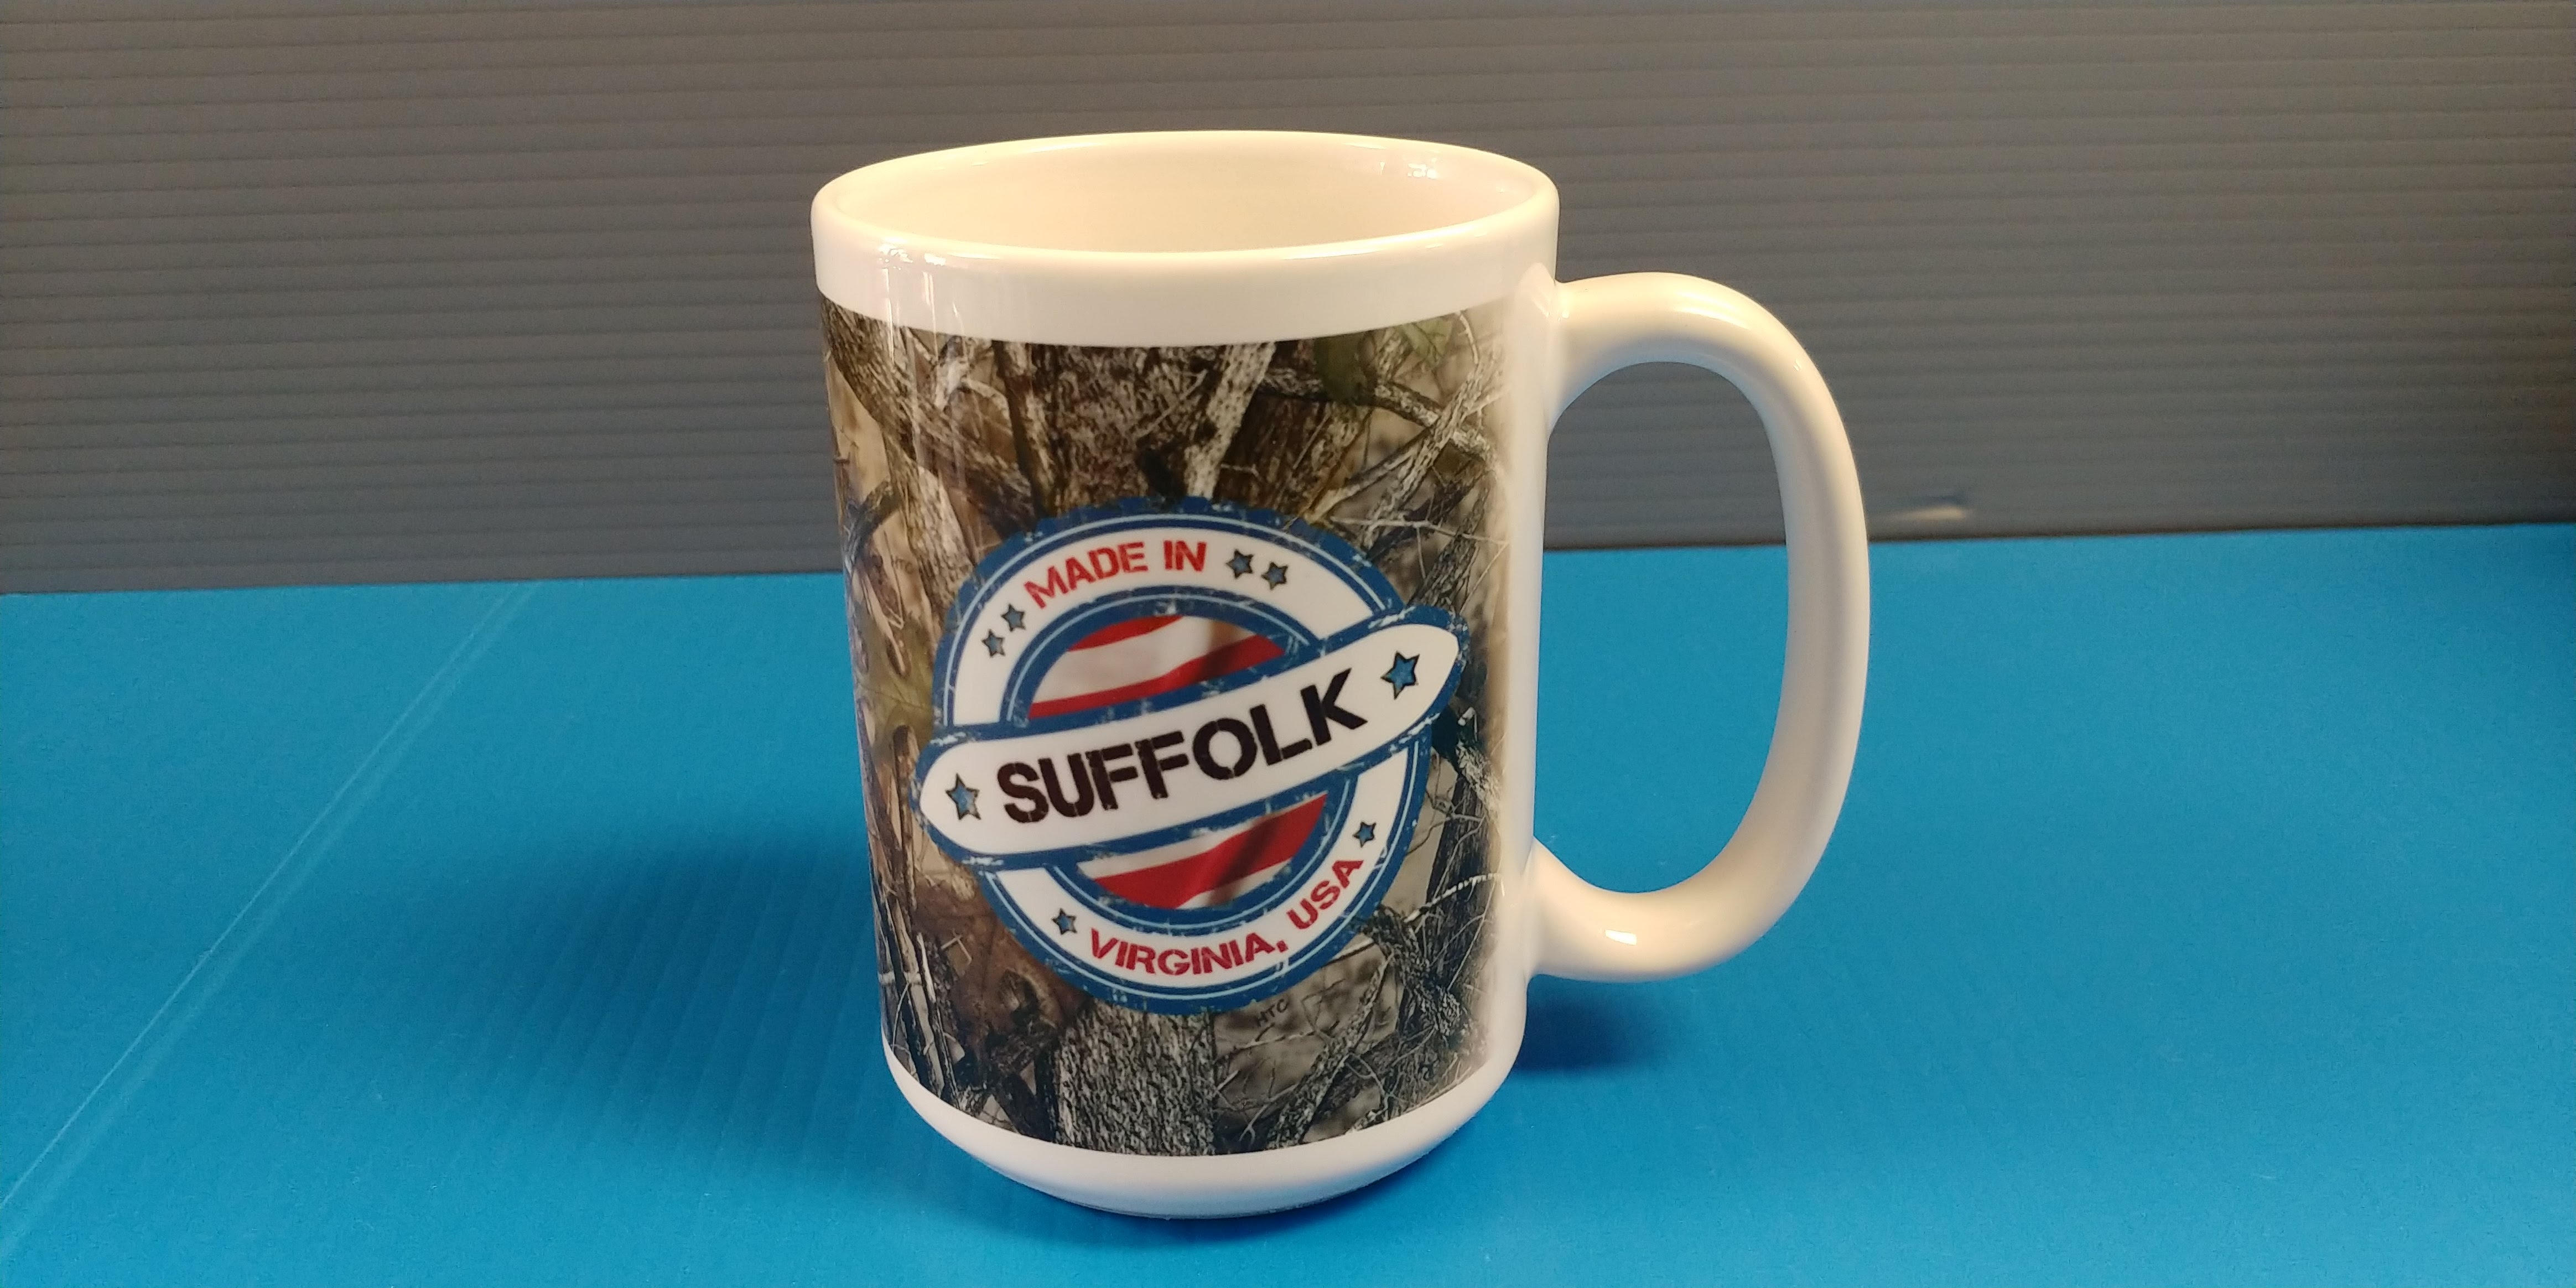 Made in Suffolk - 15oz Mug